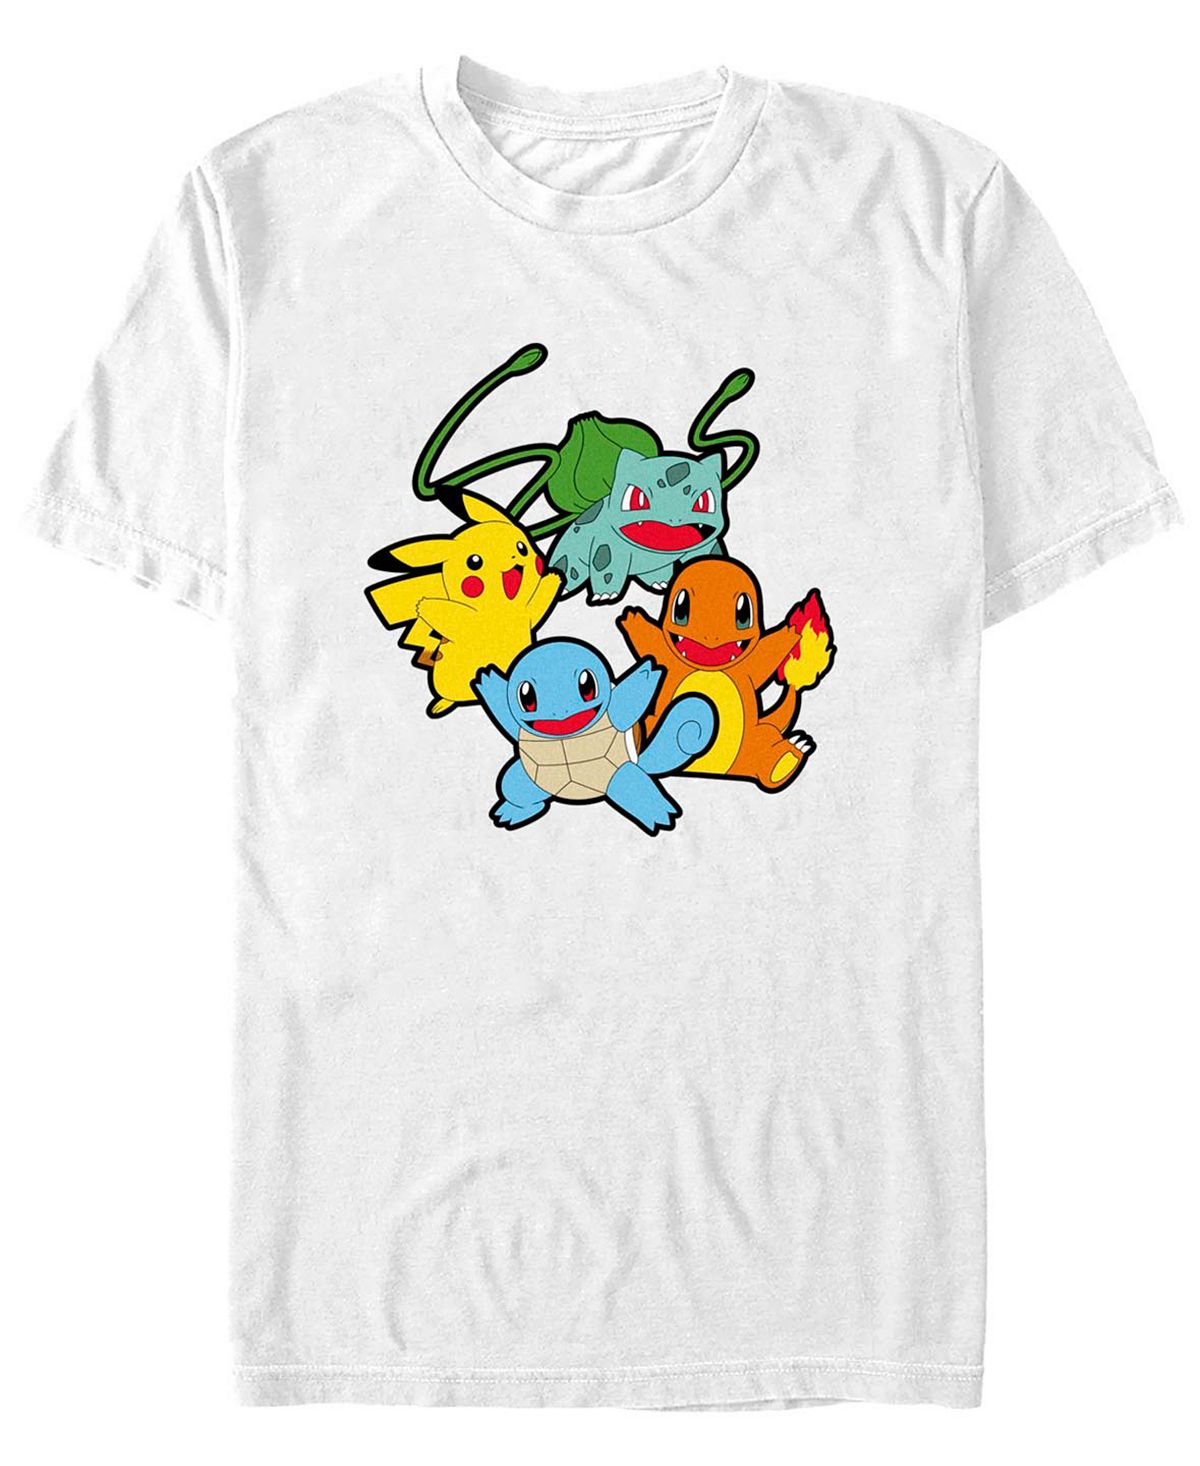 Мужская классическая футболка с короткими рукавами pokemon group Fifth Sun, белый мужская классическая футболка с короткими рукавами mickey hello darling fifth sun черный